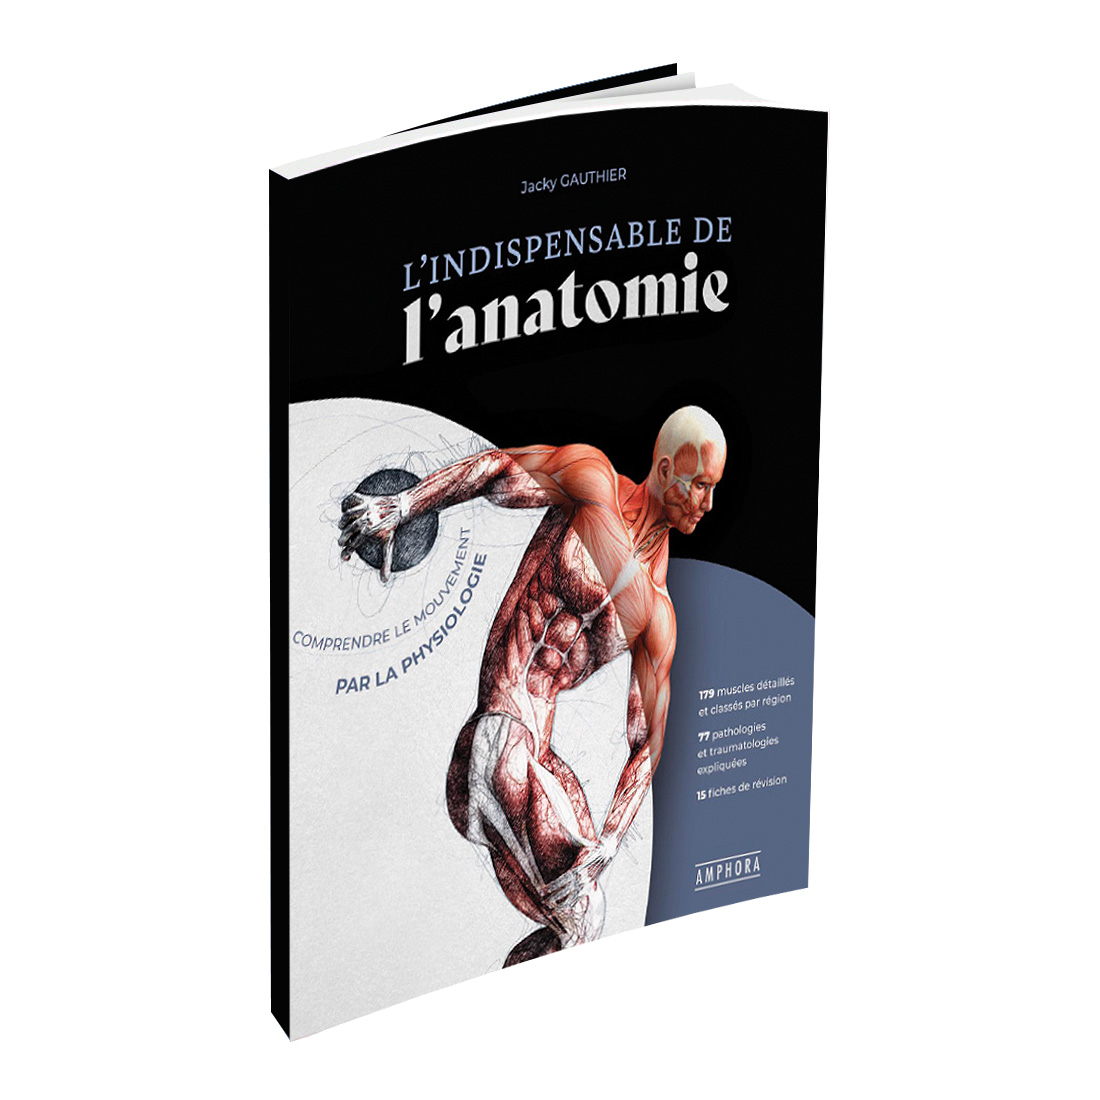 L'indispensable de l'anatomie éditions Amphora